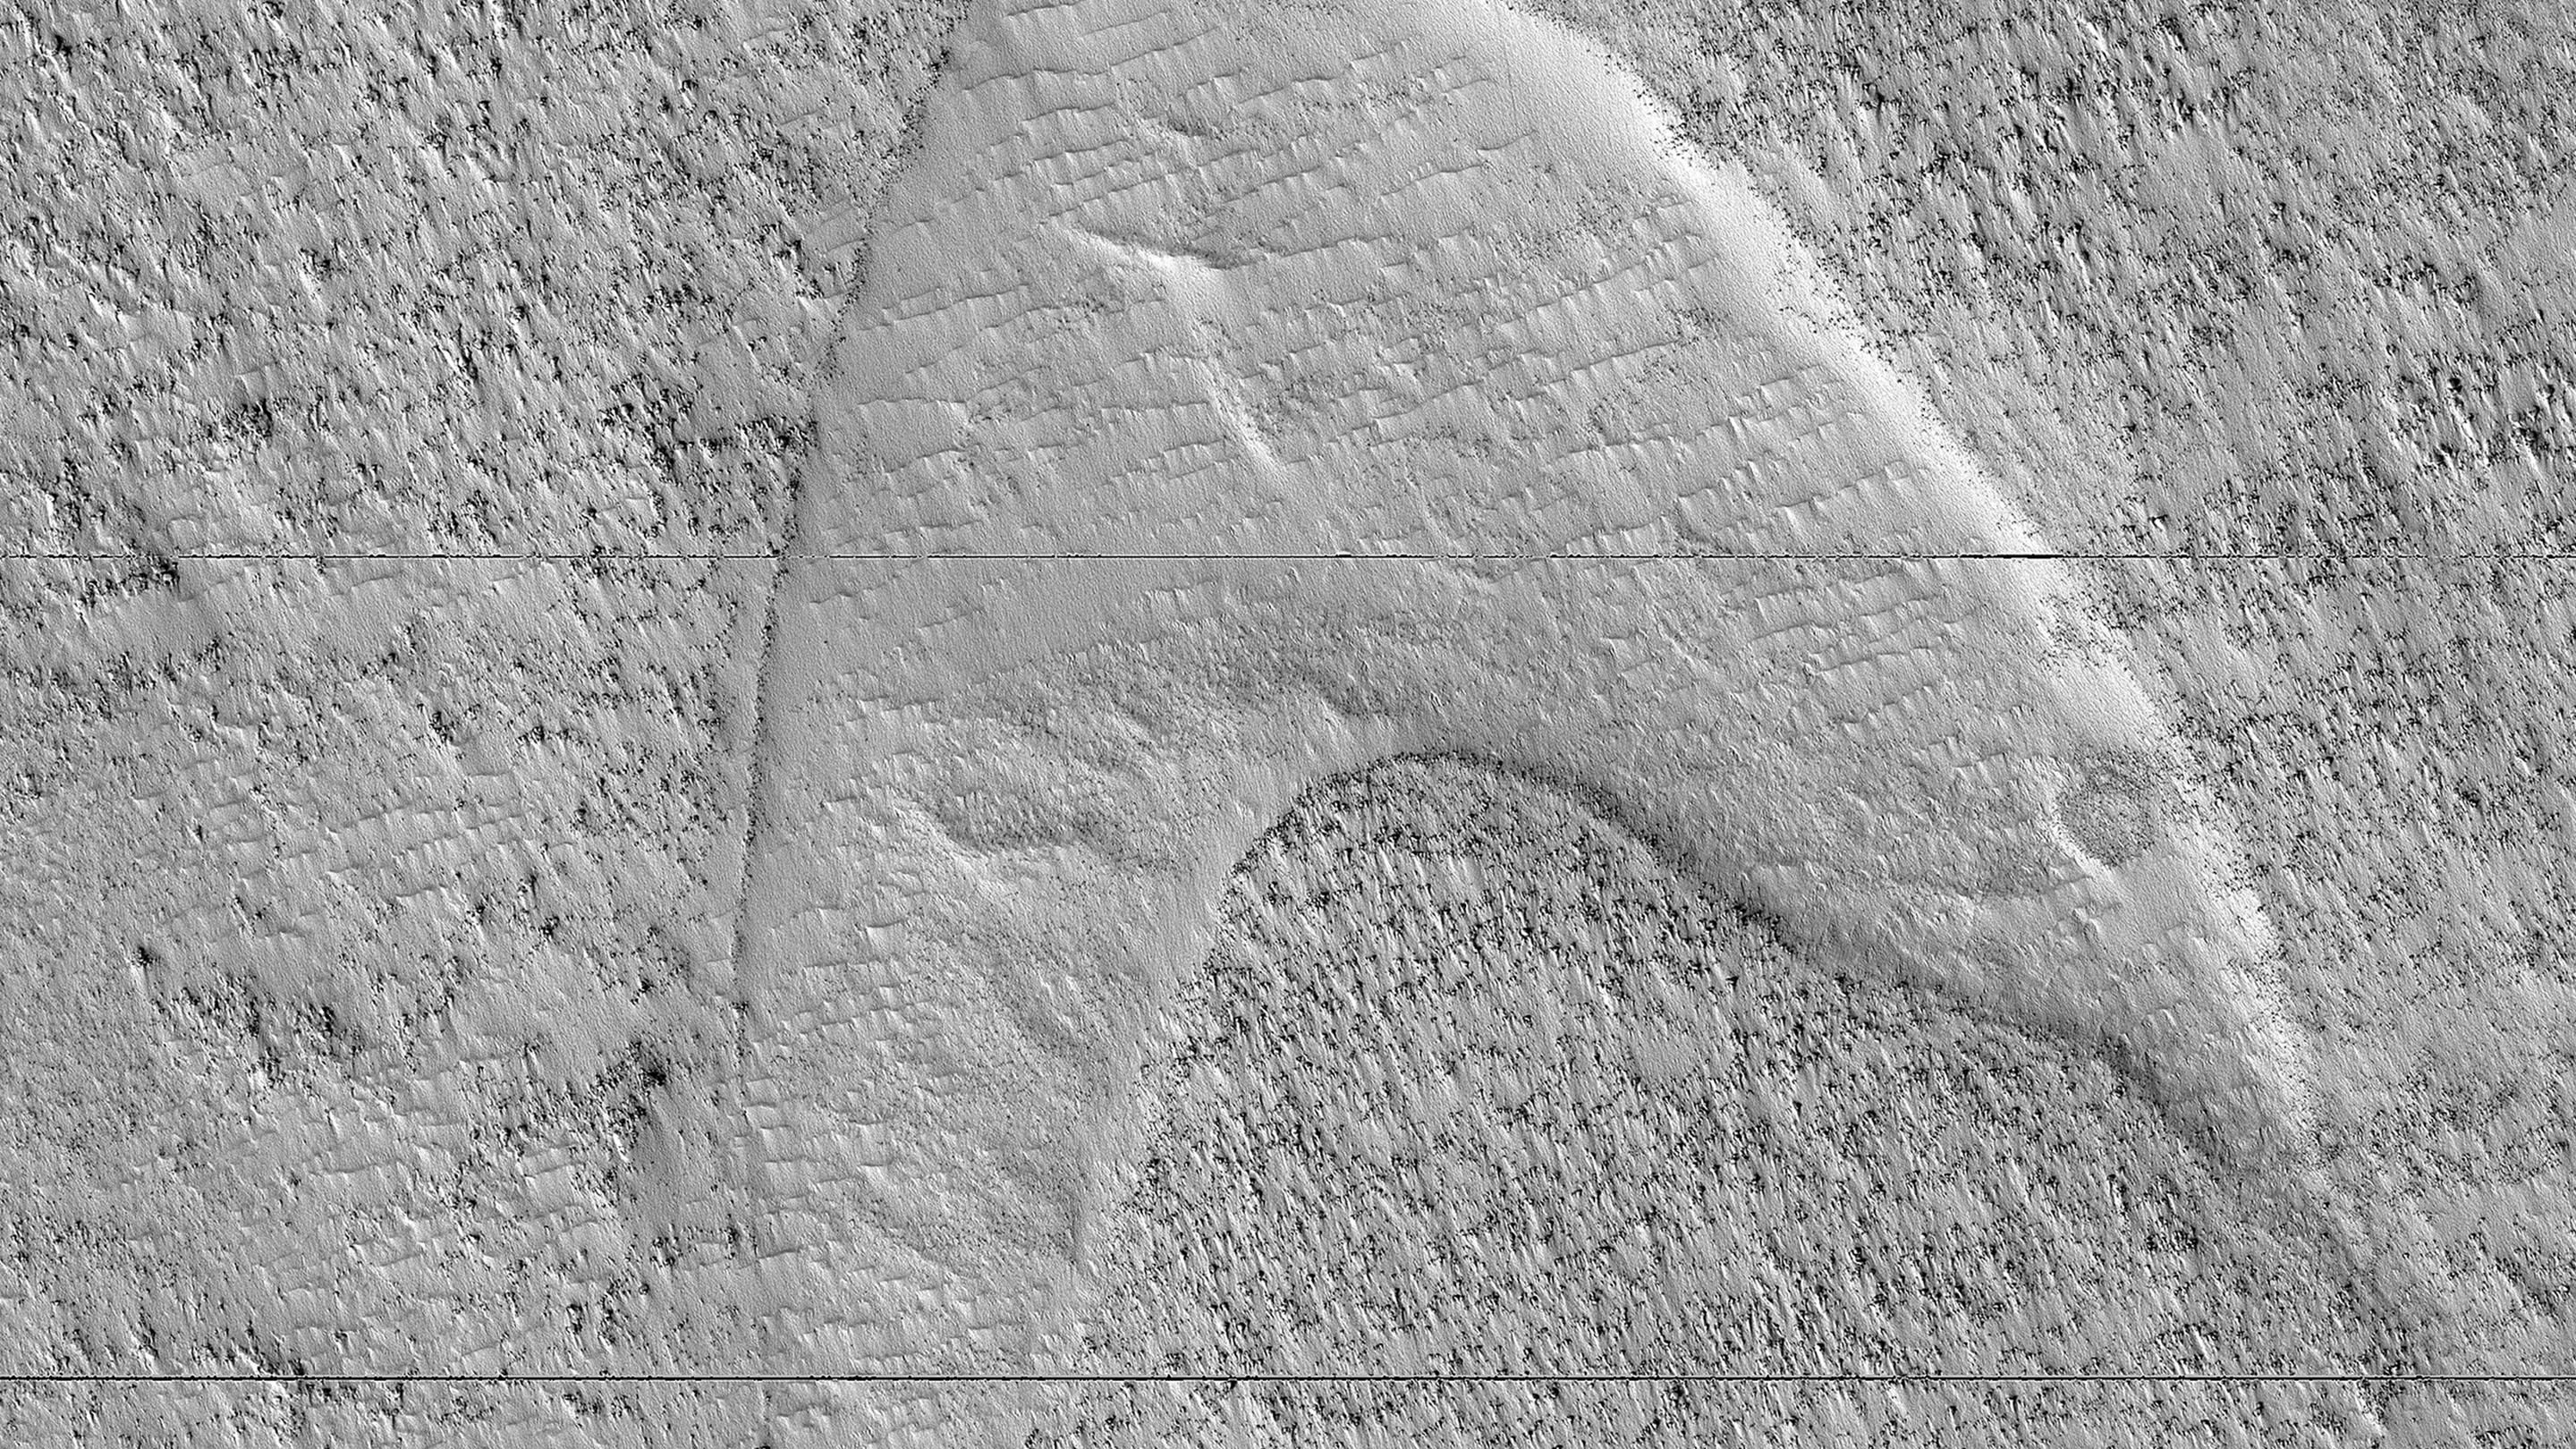 NASA orbiter spots ‘Star Trek’ symbol on Mars | CNN